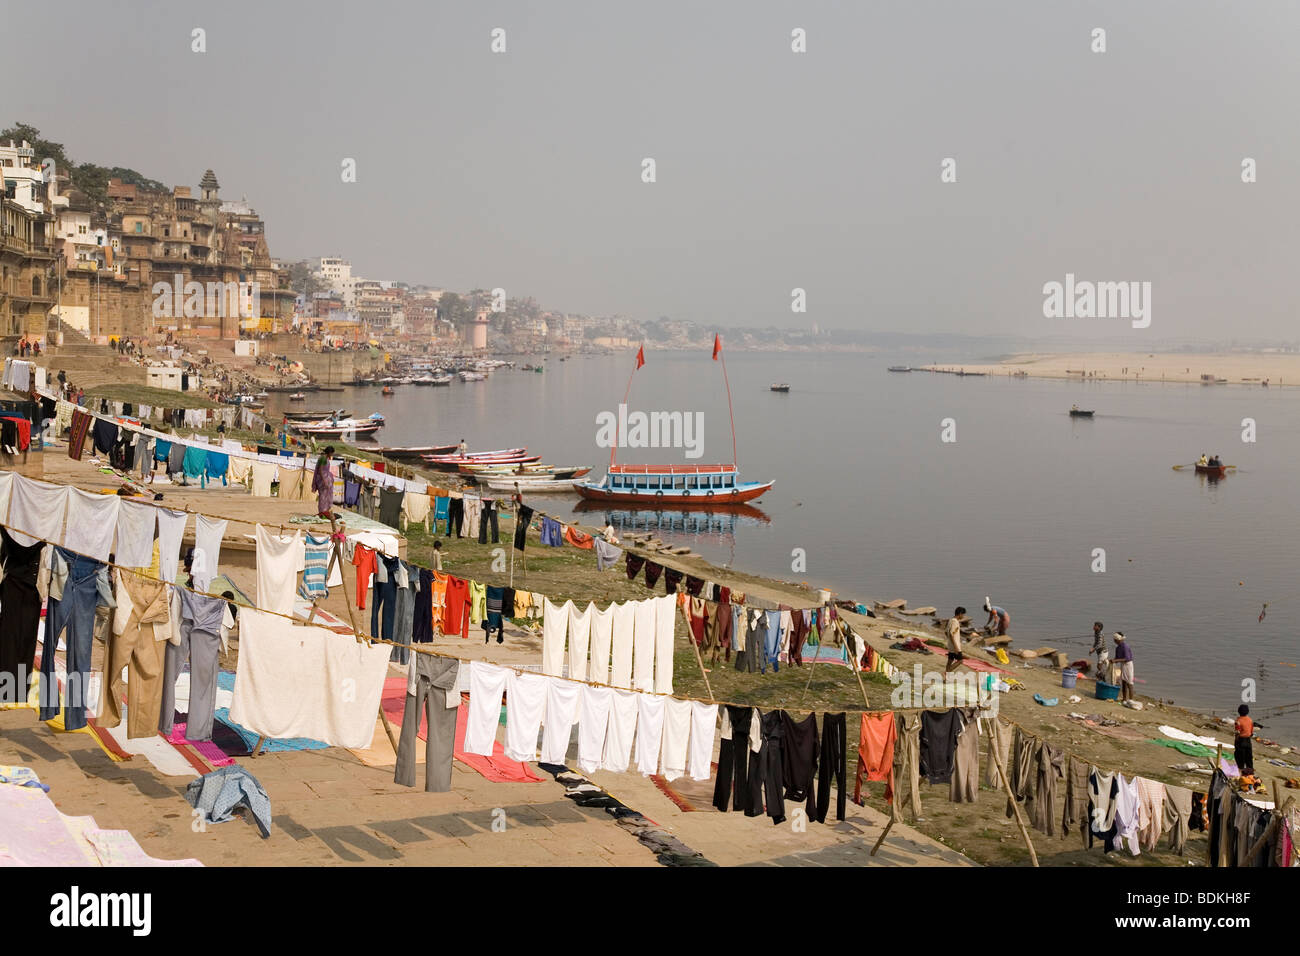 Wäsche ist zum Trocknen an den Ufern des Flusses Ganga (Ganges) in Varanasi, Indien gehängt. Stockfoto